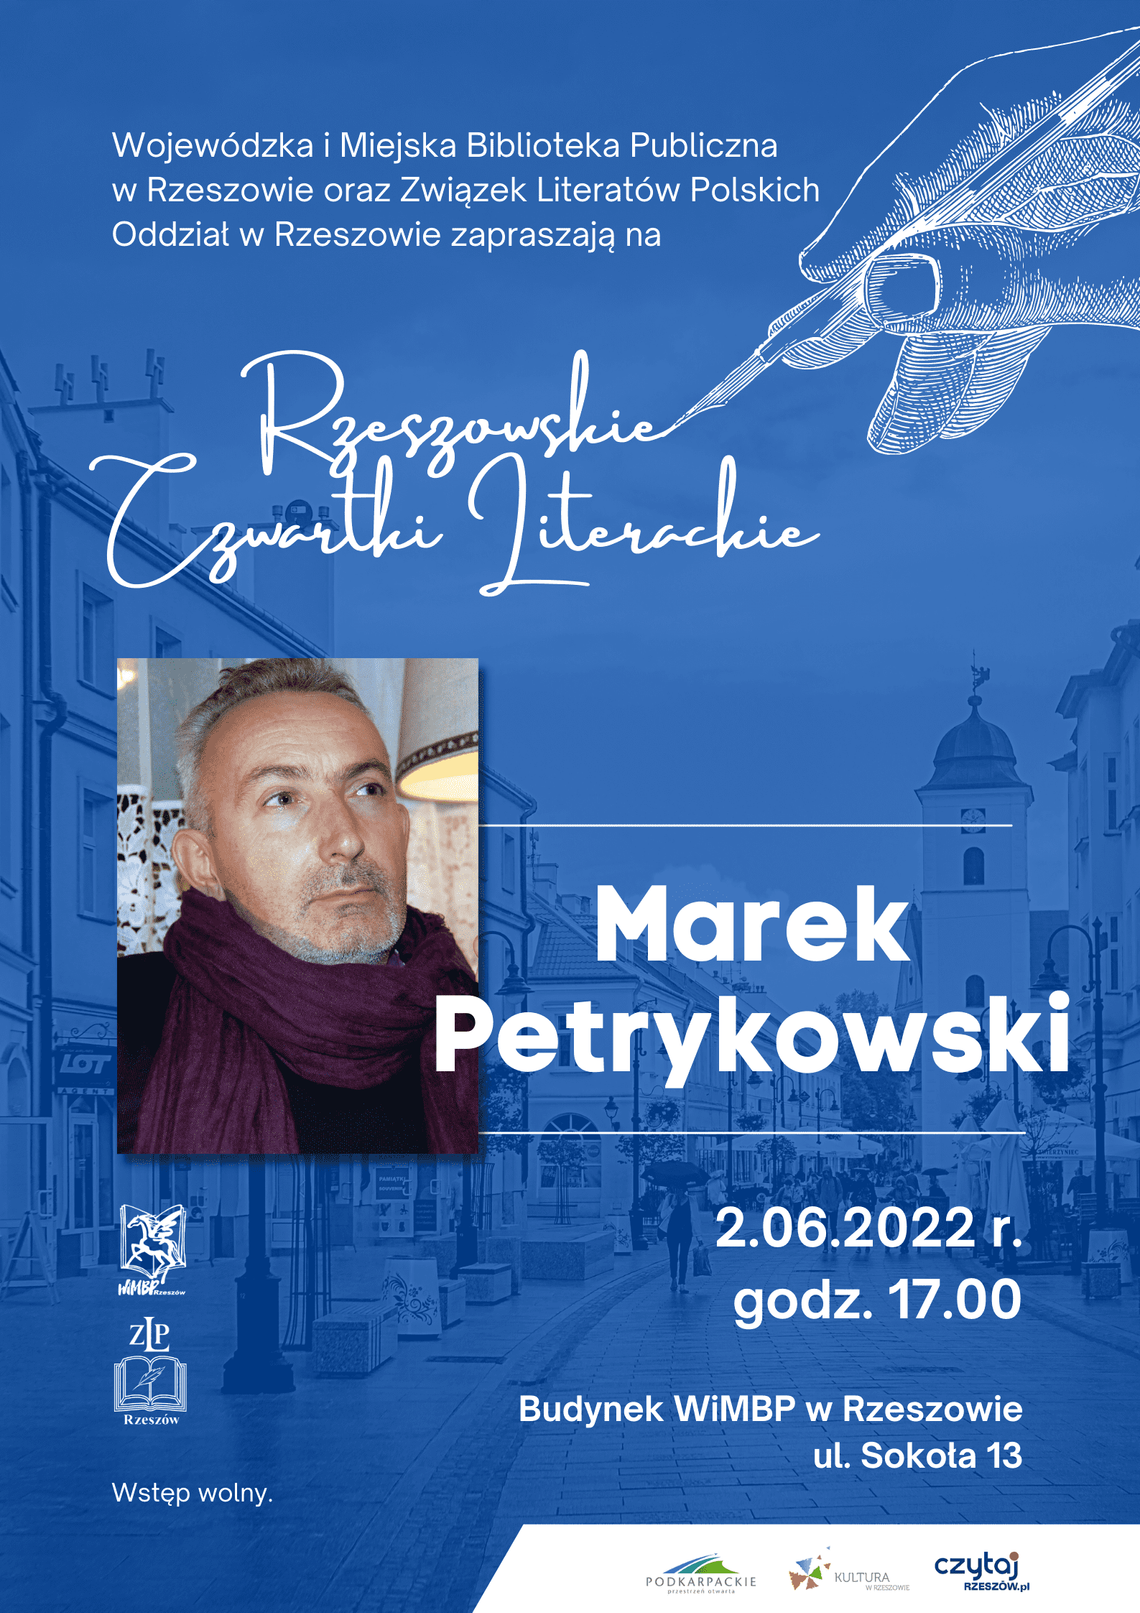 Spotkanie autorskie z Markiem Petrykowskim w ramach Rzeszowskich Czwartków Literackich